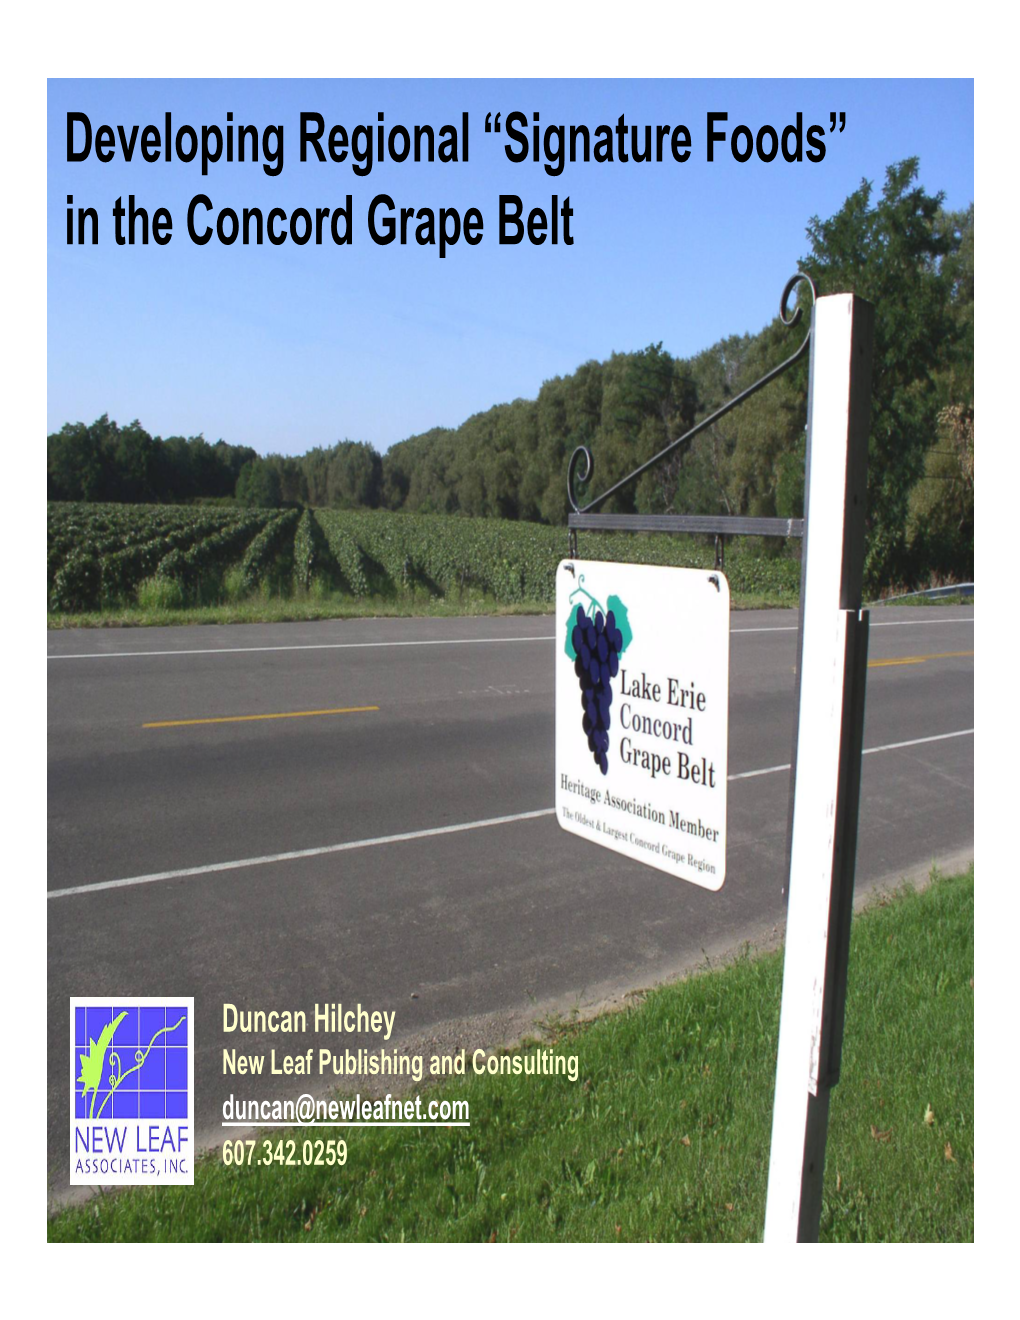 In the Concord Grape Belt